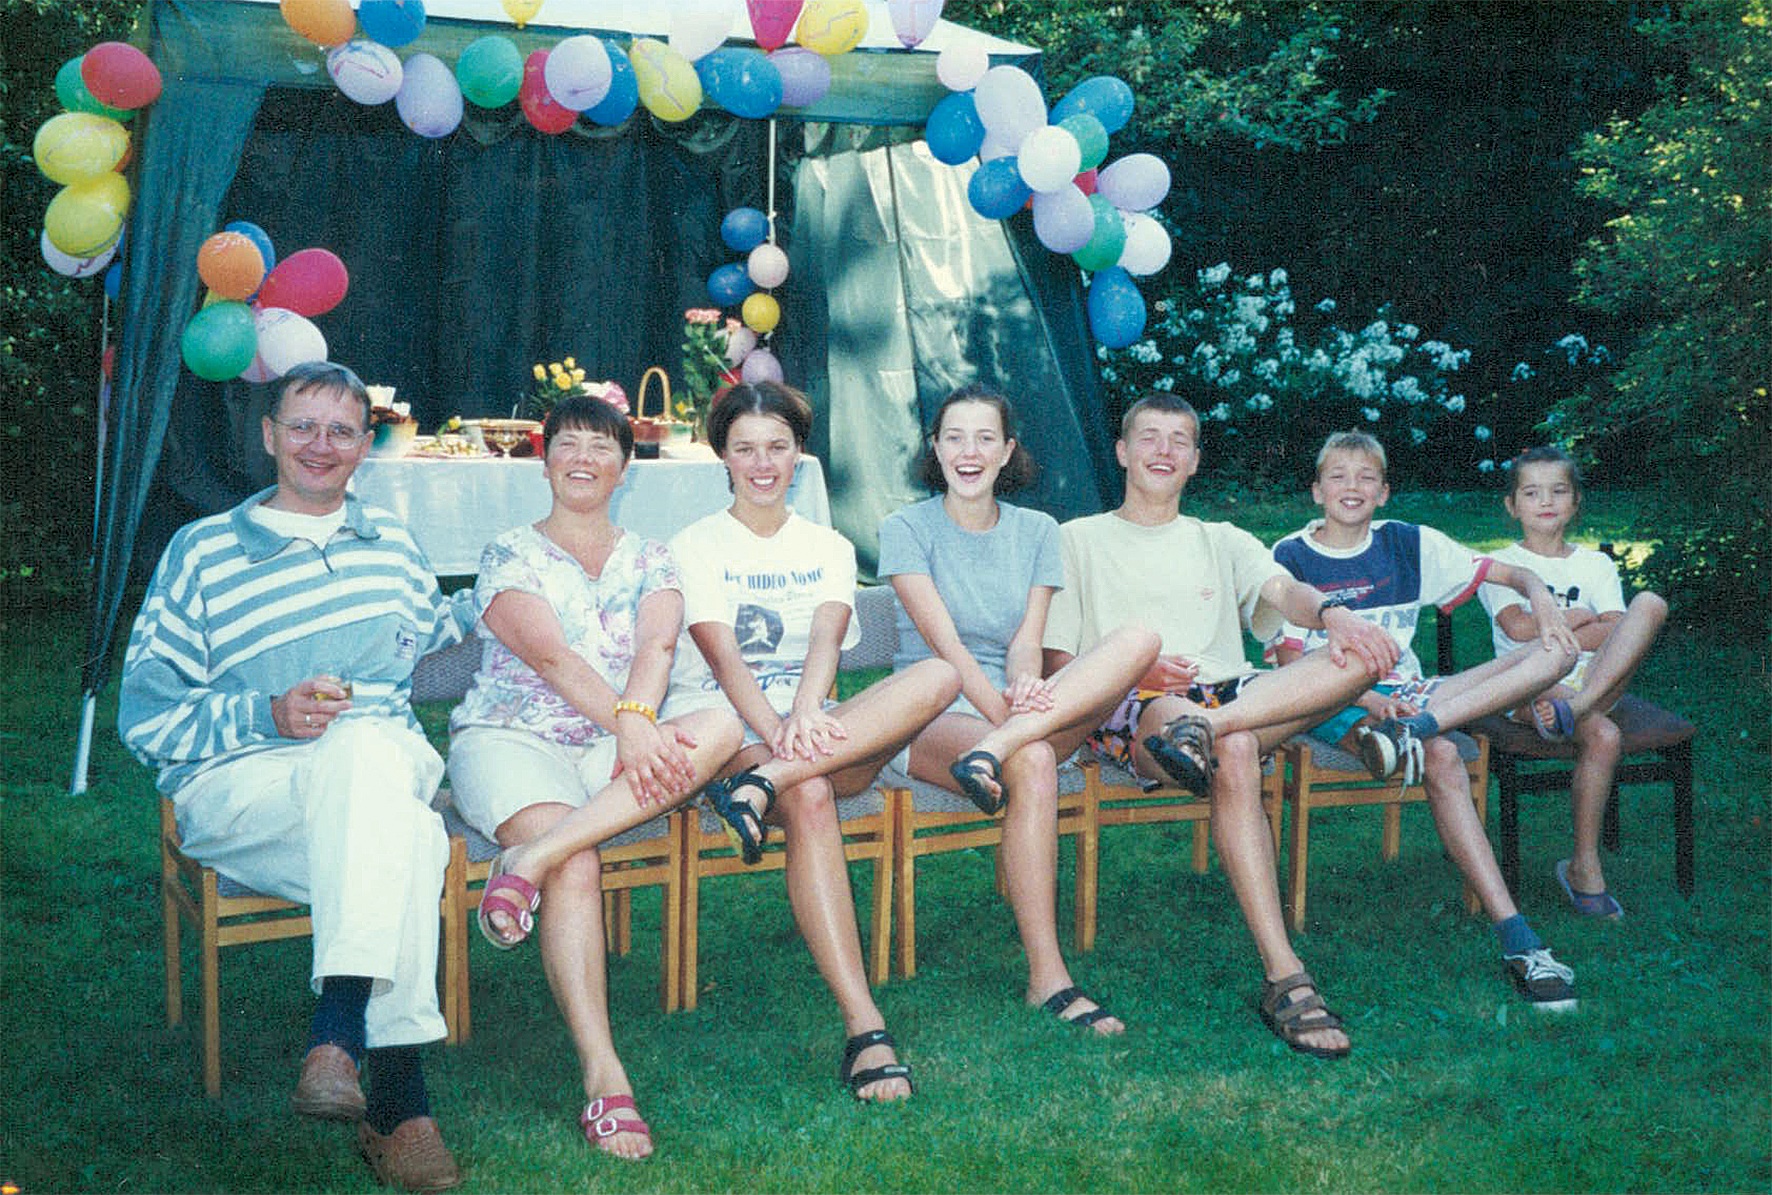 Visa ģimene dārza svētkos 1999. gadā (no kreisās): Viesturs Rozītis, Inese Rozīte, bērni Līga Rozīte, Inta Šoriņa, Reinis Rozītis, Pēteris Rozītis, Ulla Rozīte